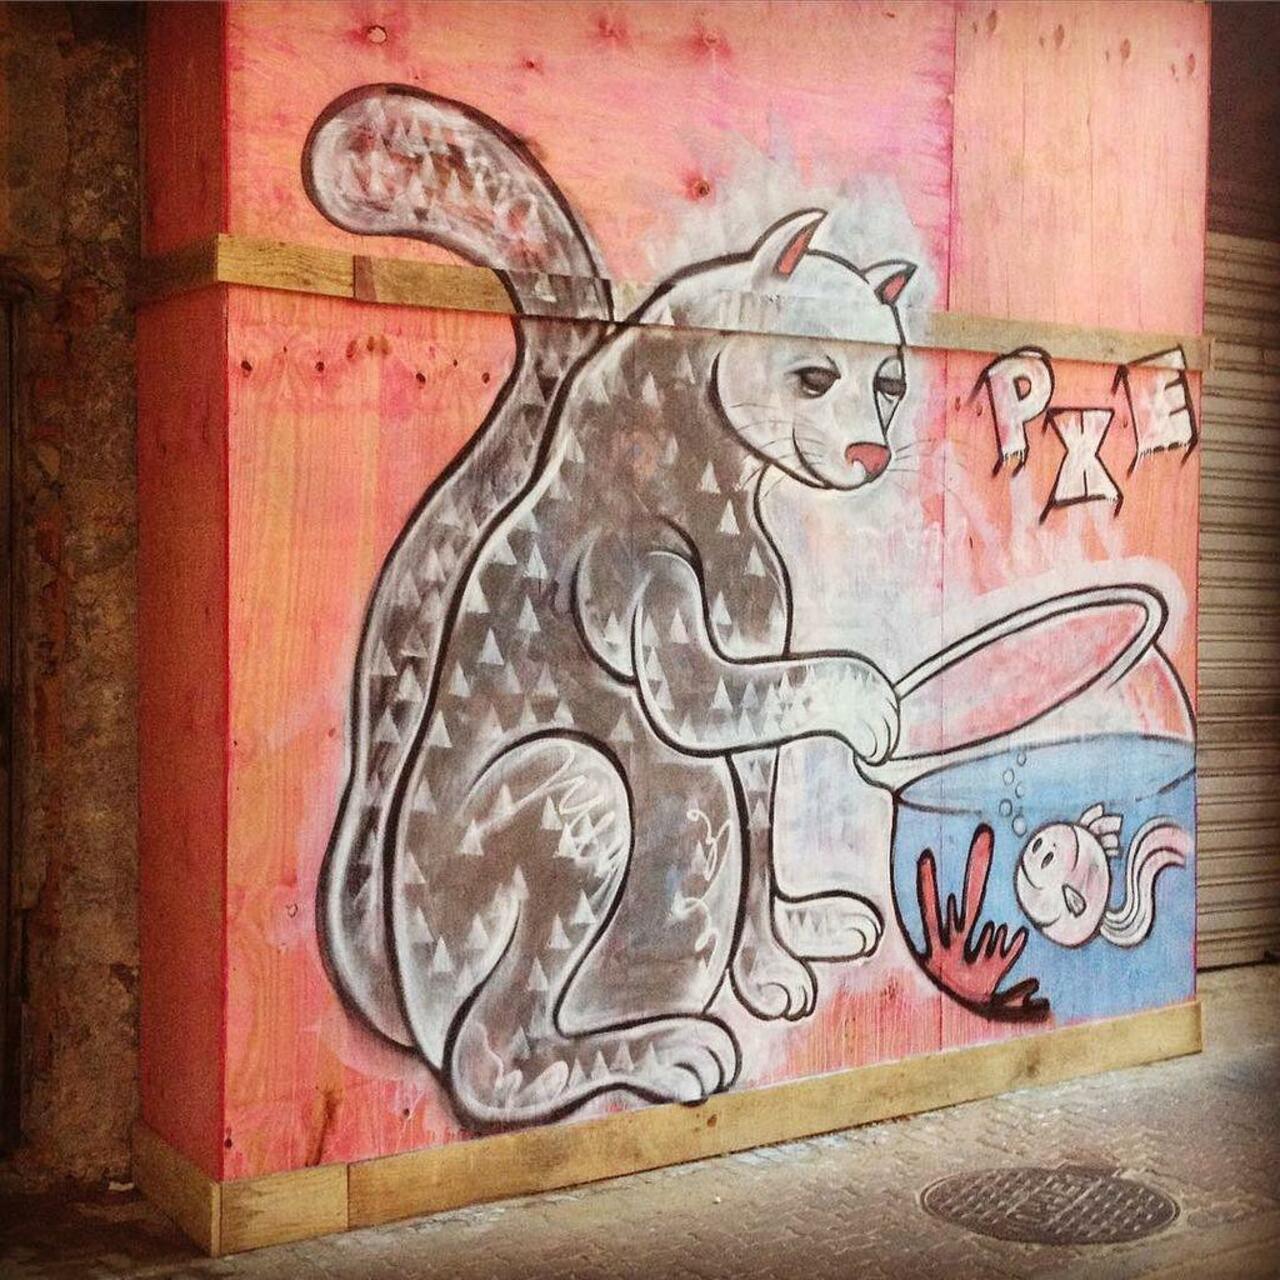 Se não é amor, o que será então? "Untitled feeling" by #PXE #Graffiti #streetart #streetartRio #Ipanema #RiodeJanei… http://t.co/8Xlgrb2CAp